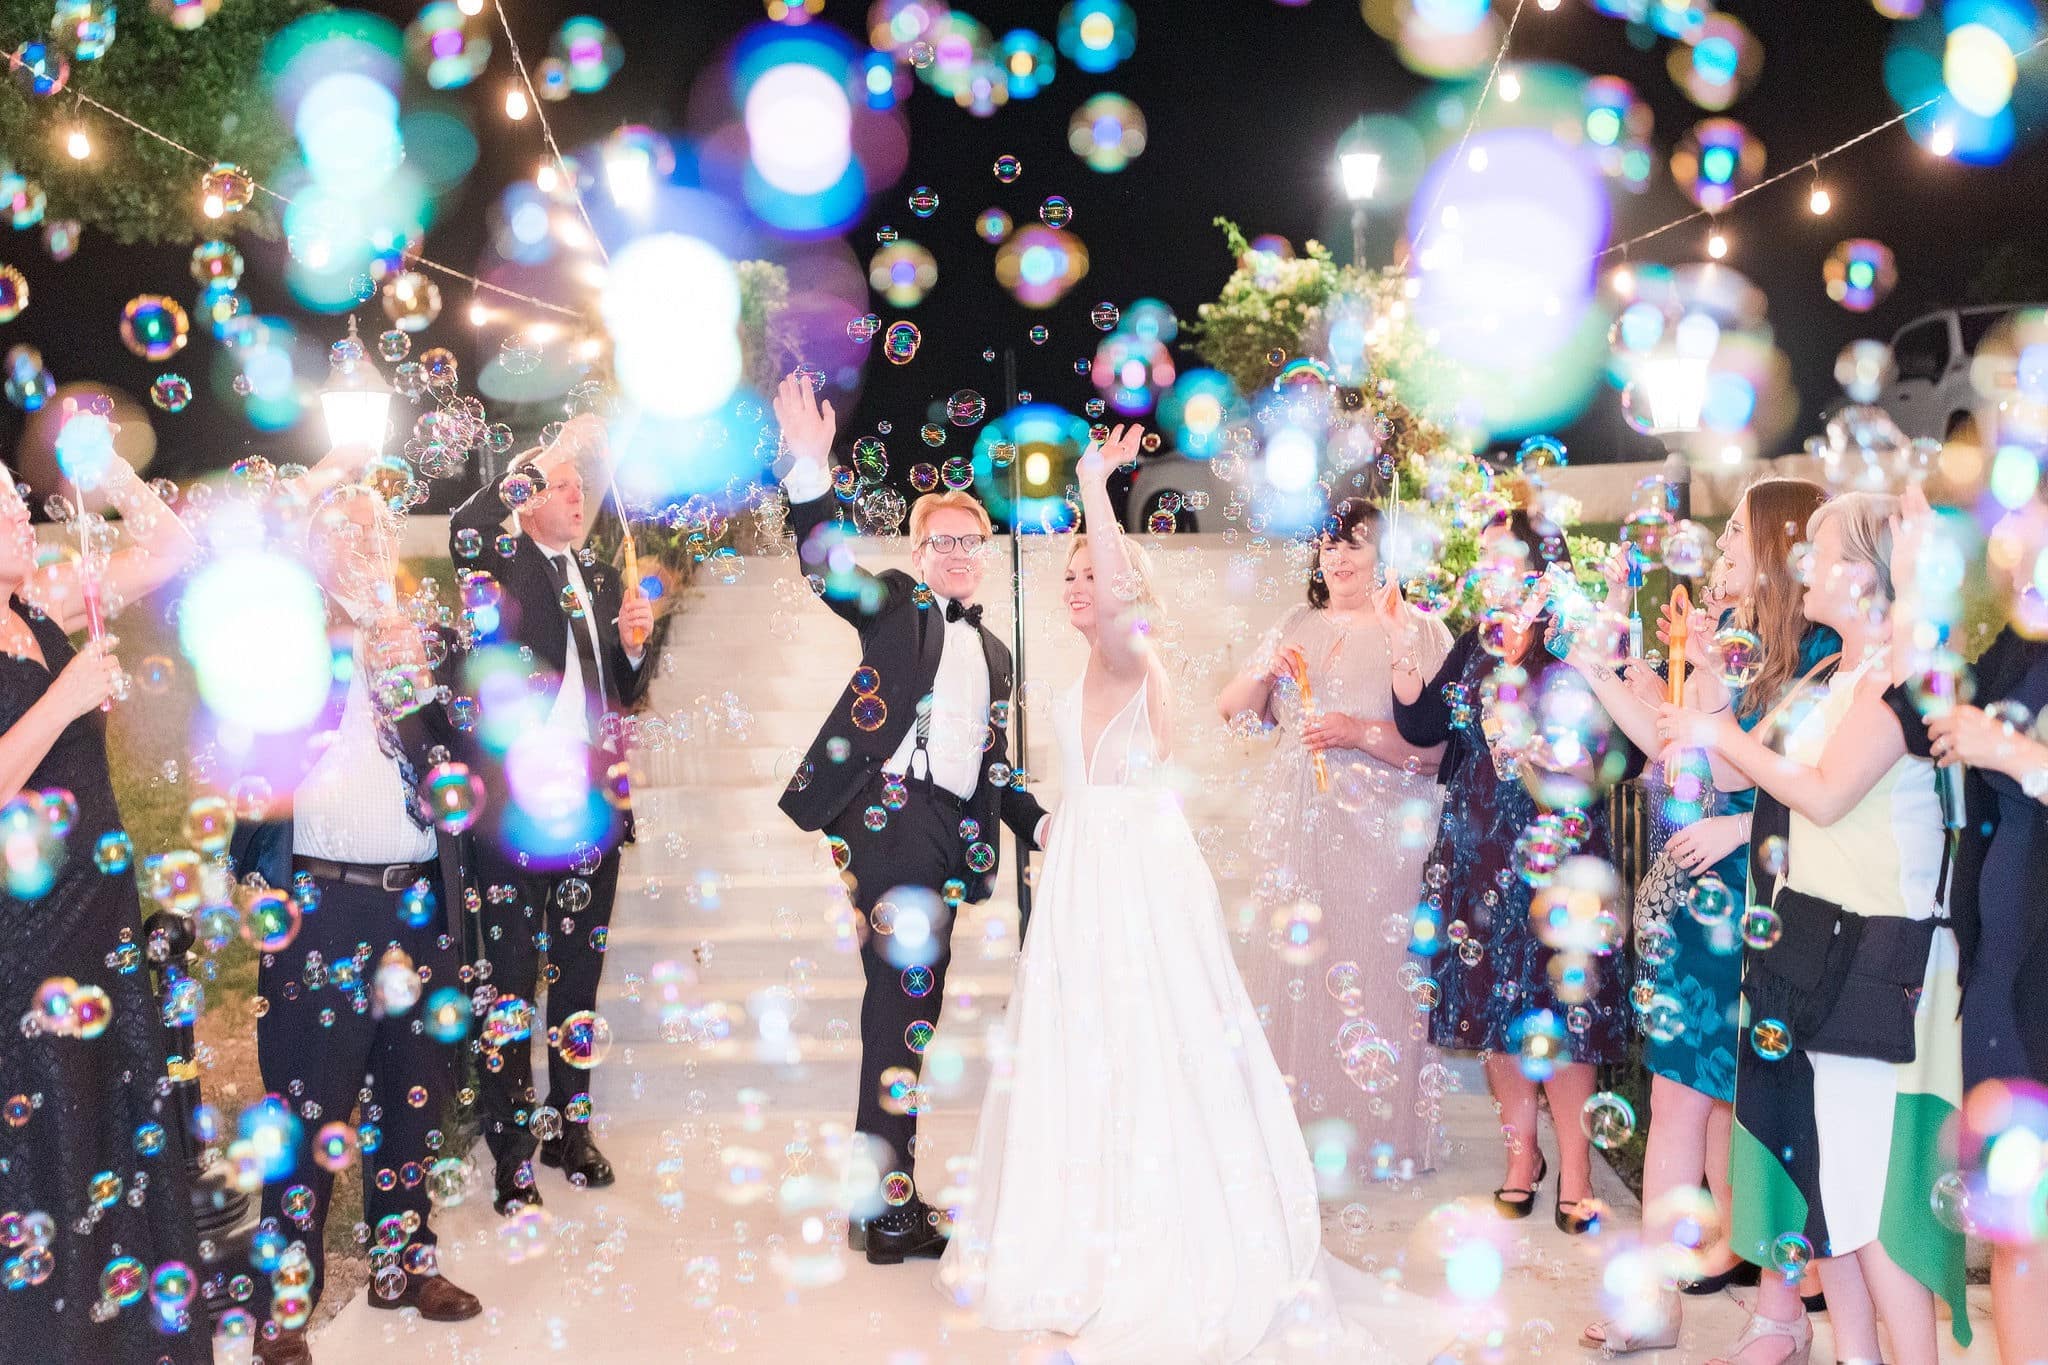 Bride and groom make grand exit under string lights.